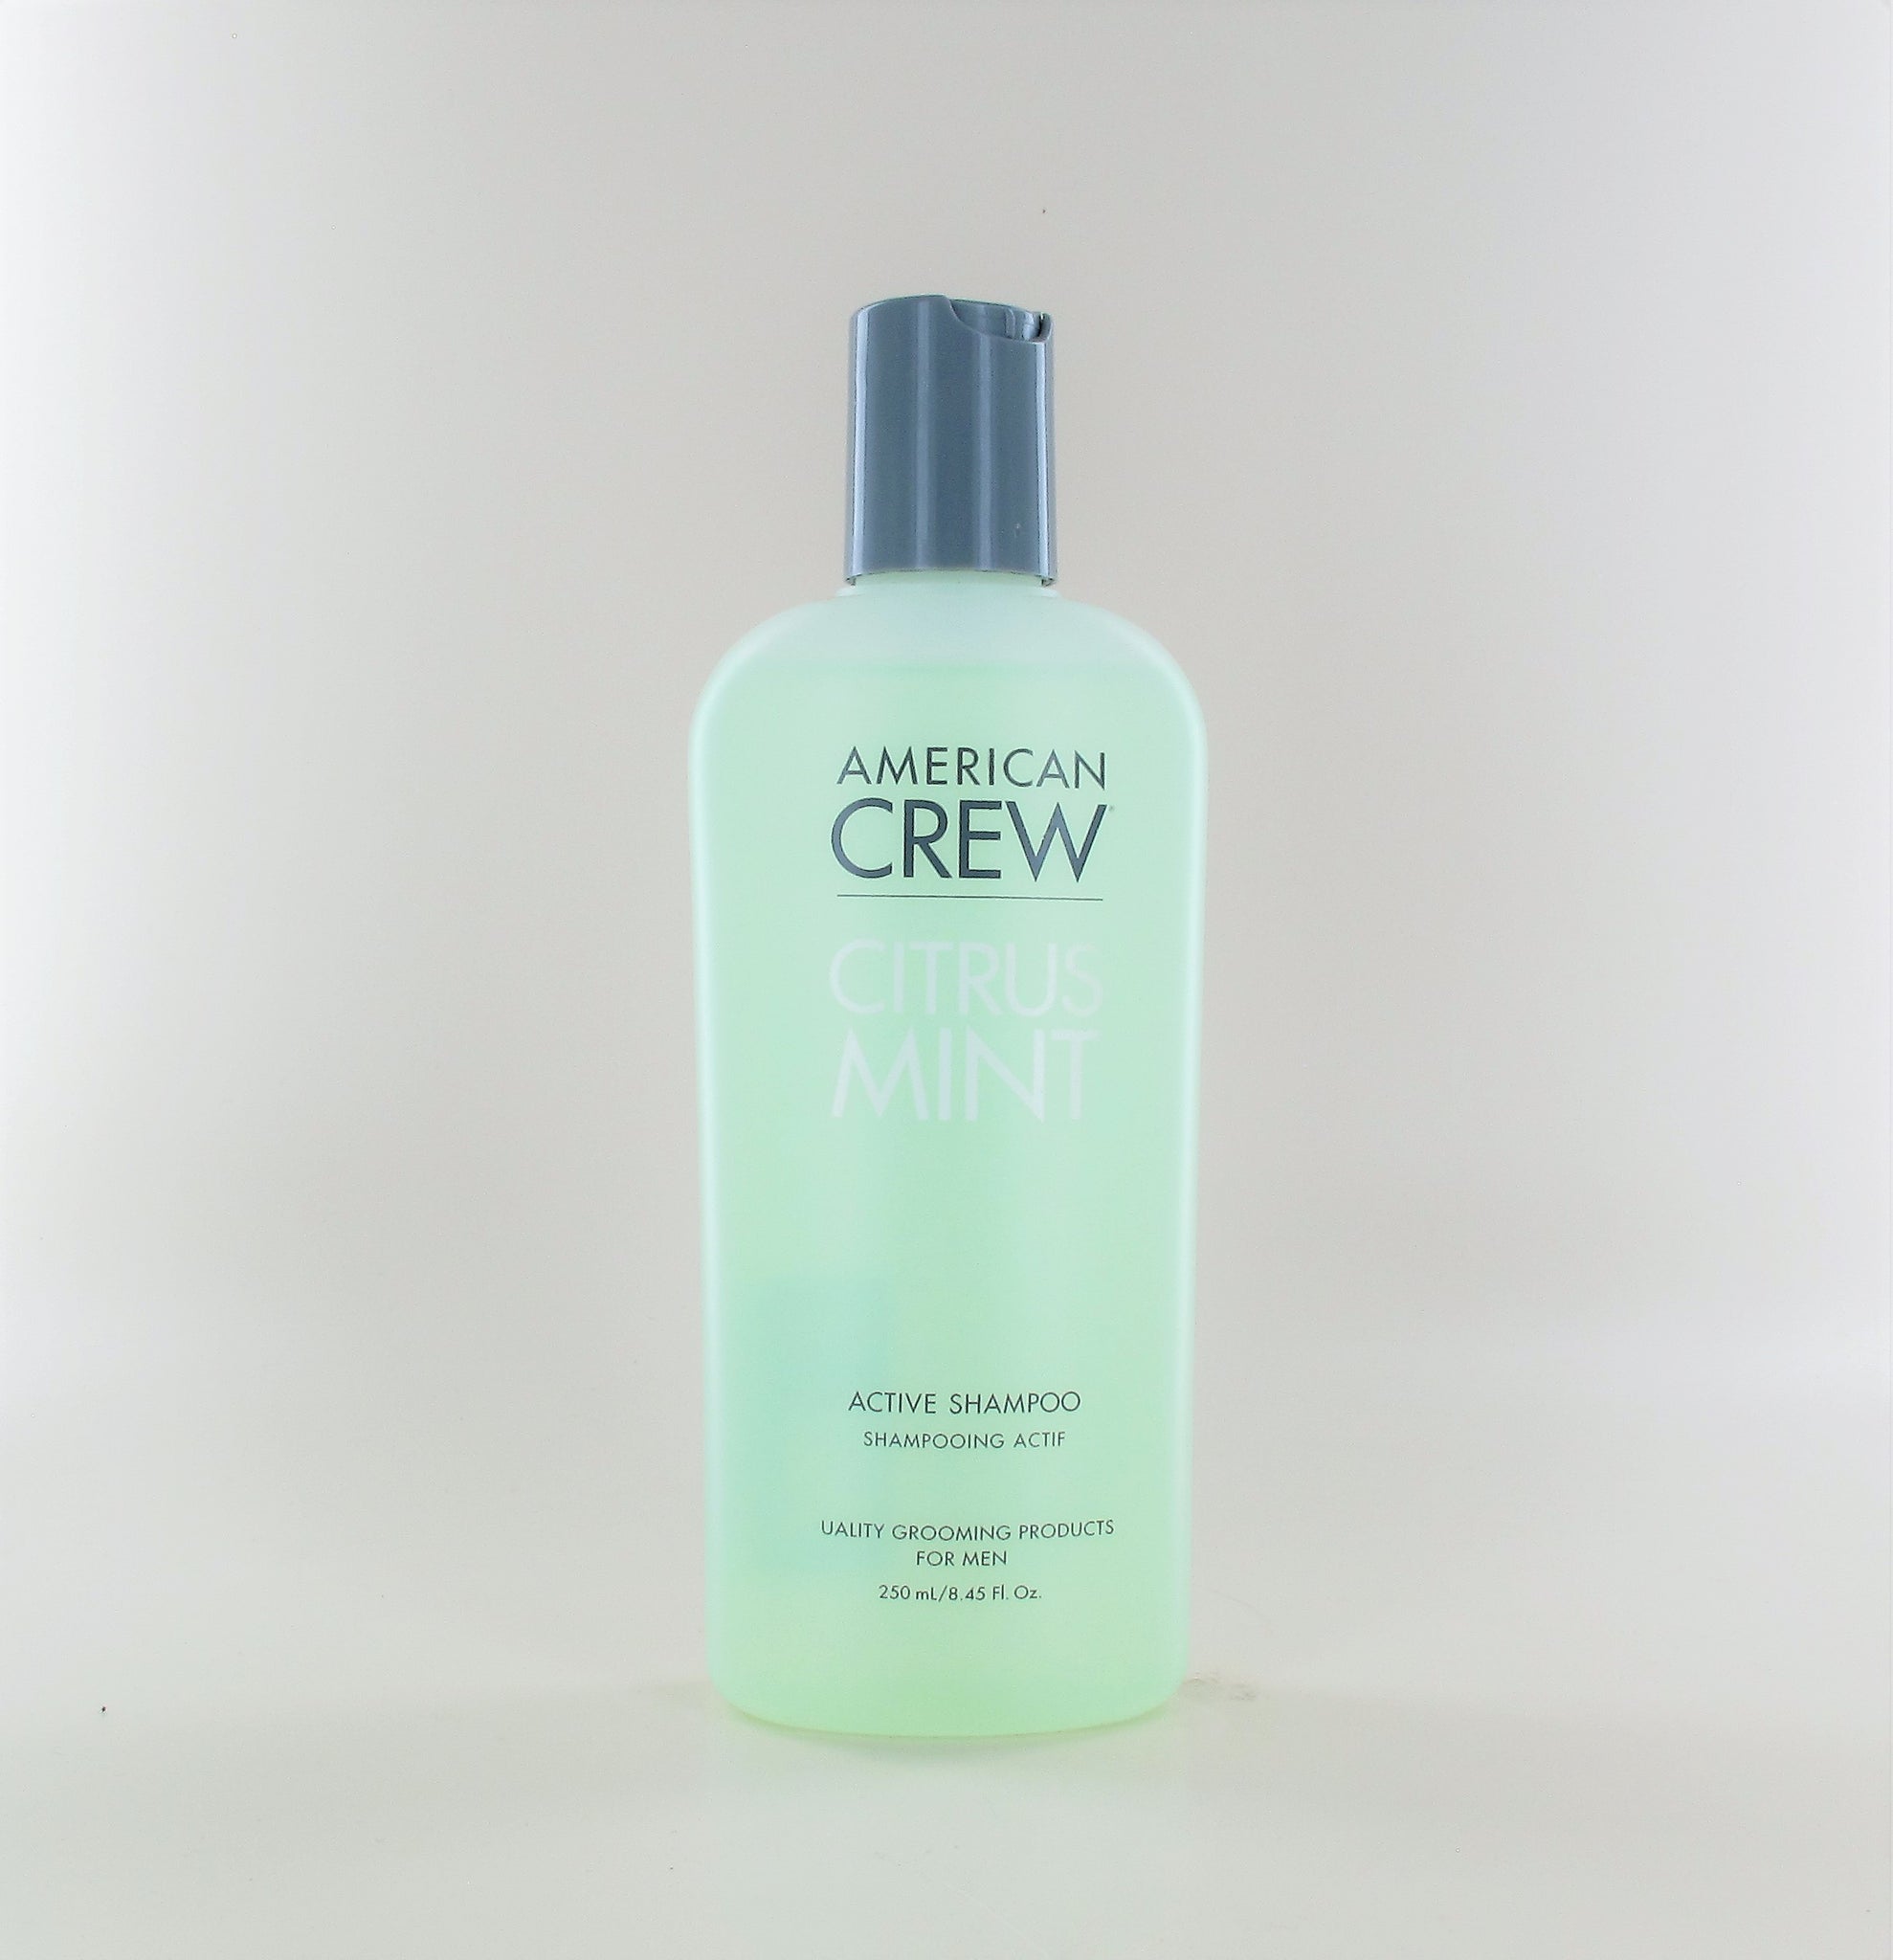 AMERICAN CREW Citrus Mint Active Shampoo 8.45 oz